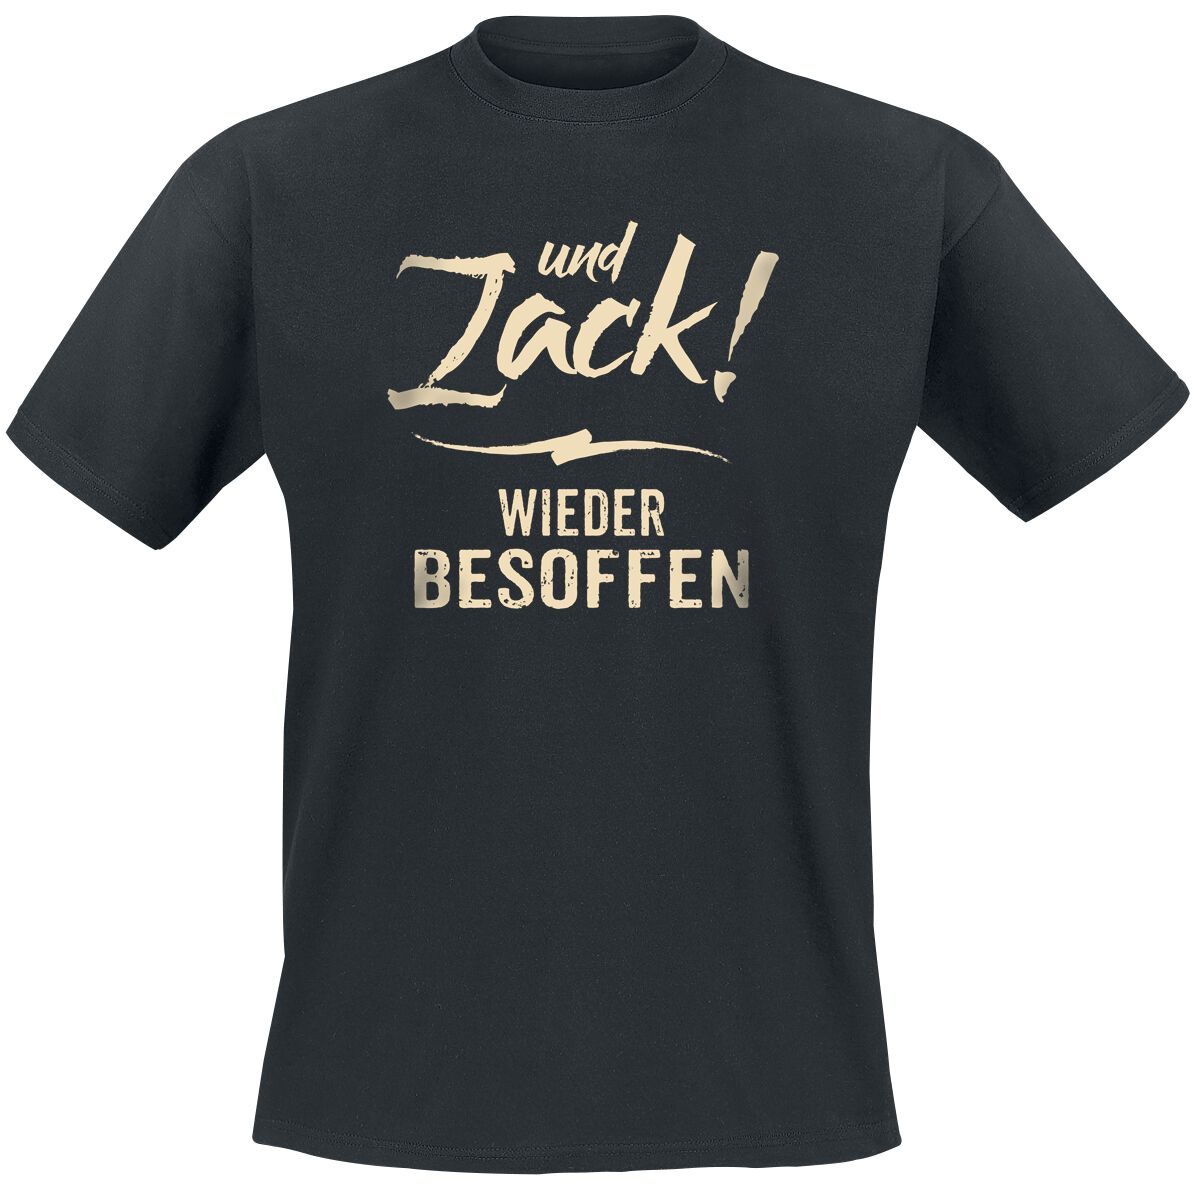 Sprüche Und Zack - wieder besoffen T-Shirt schwarz in M